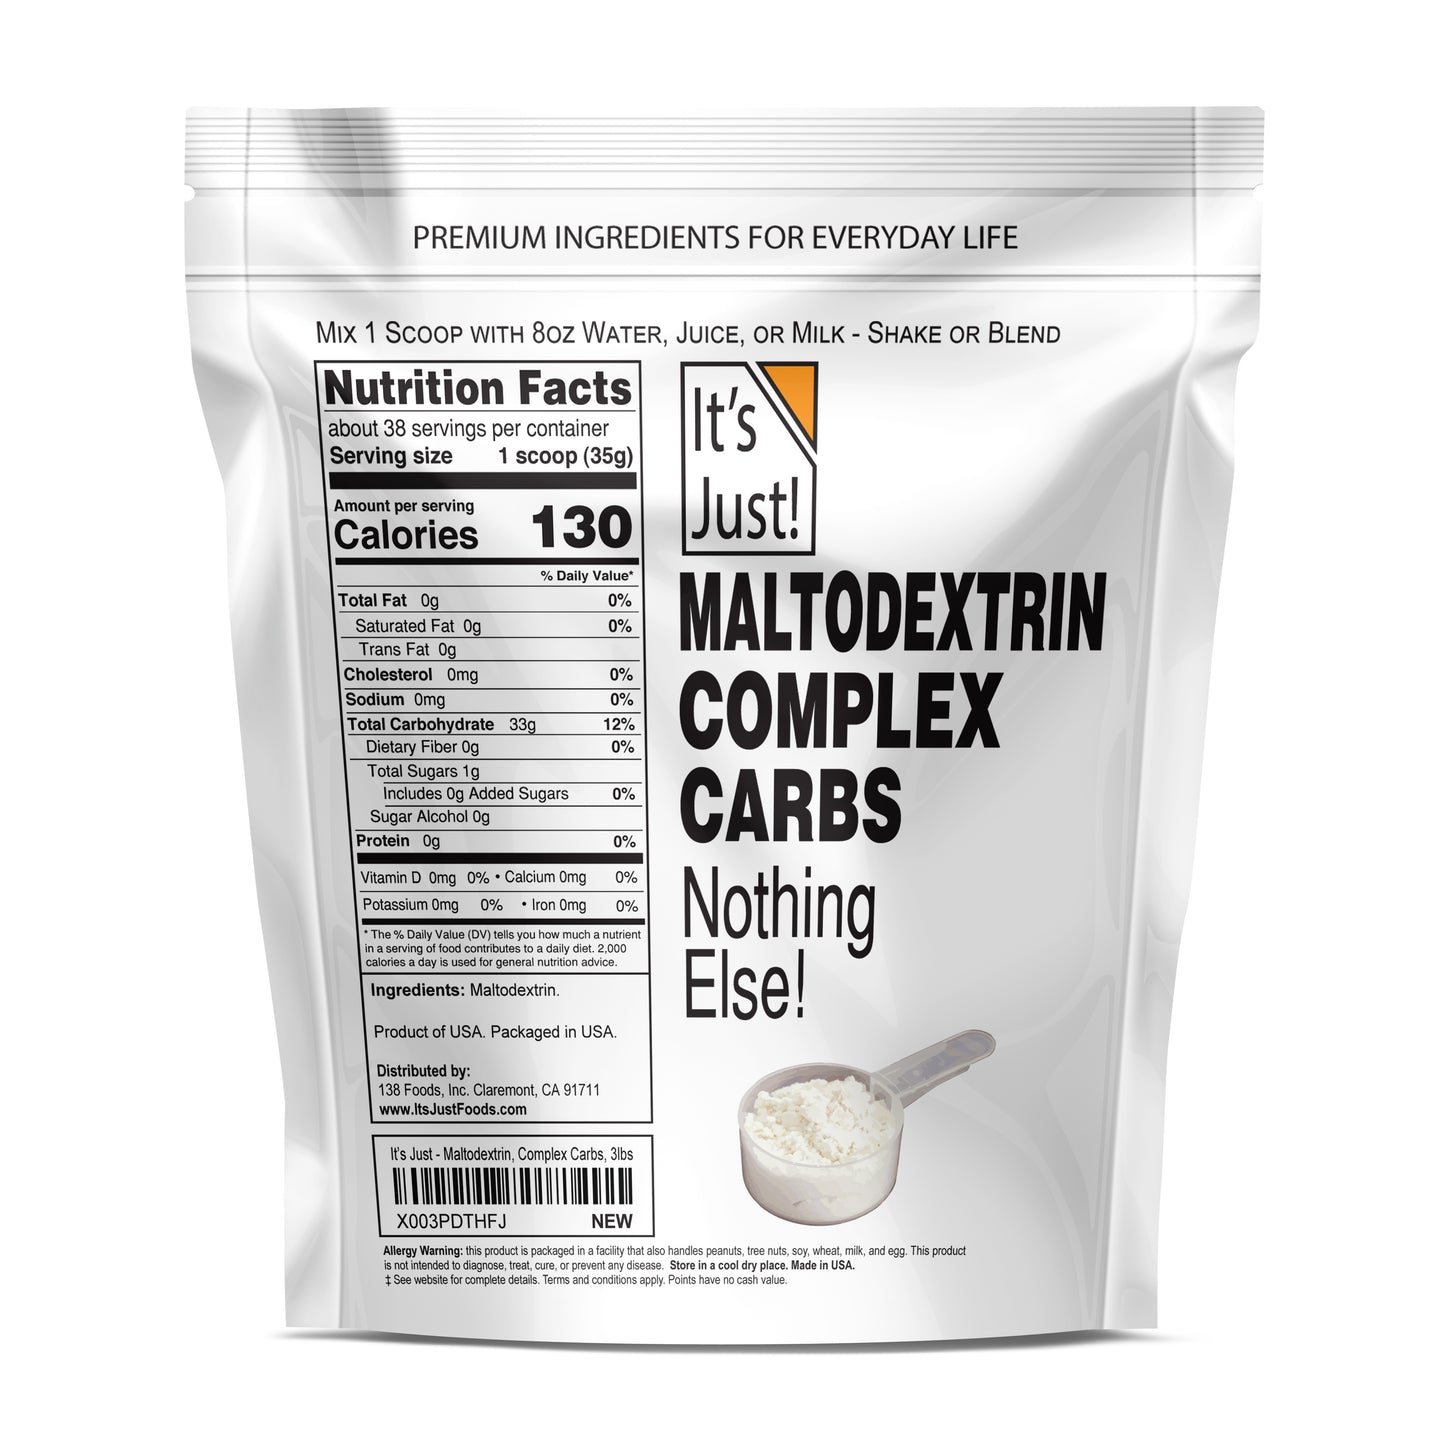 It's Just! - Maltodextrin Complex Carbs